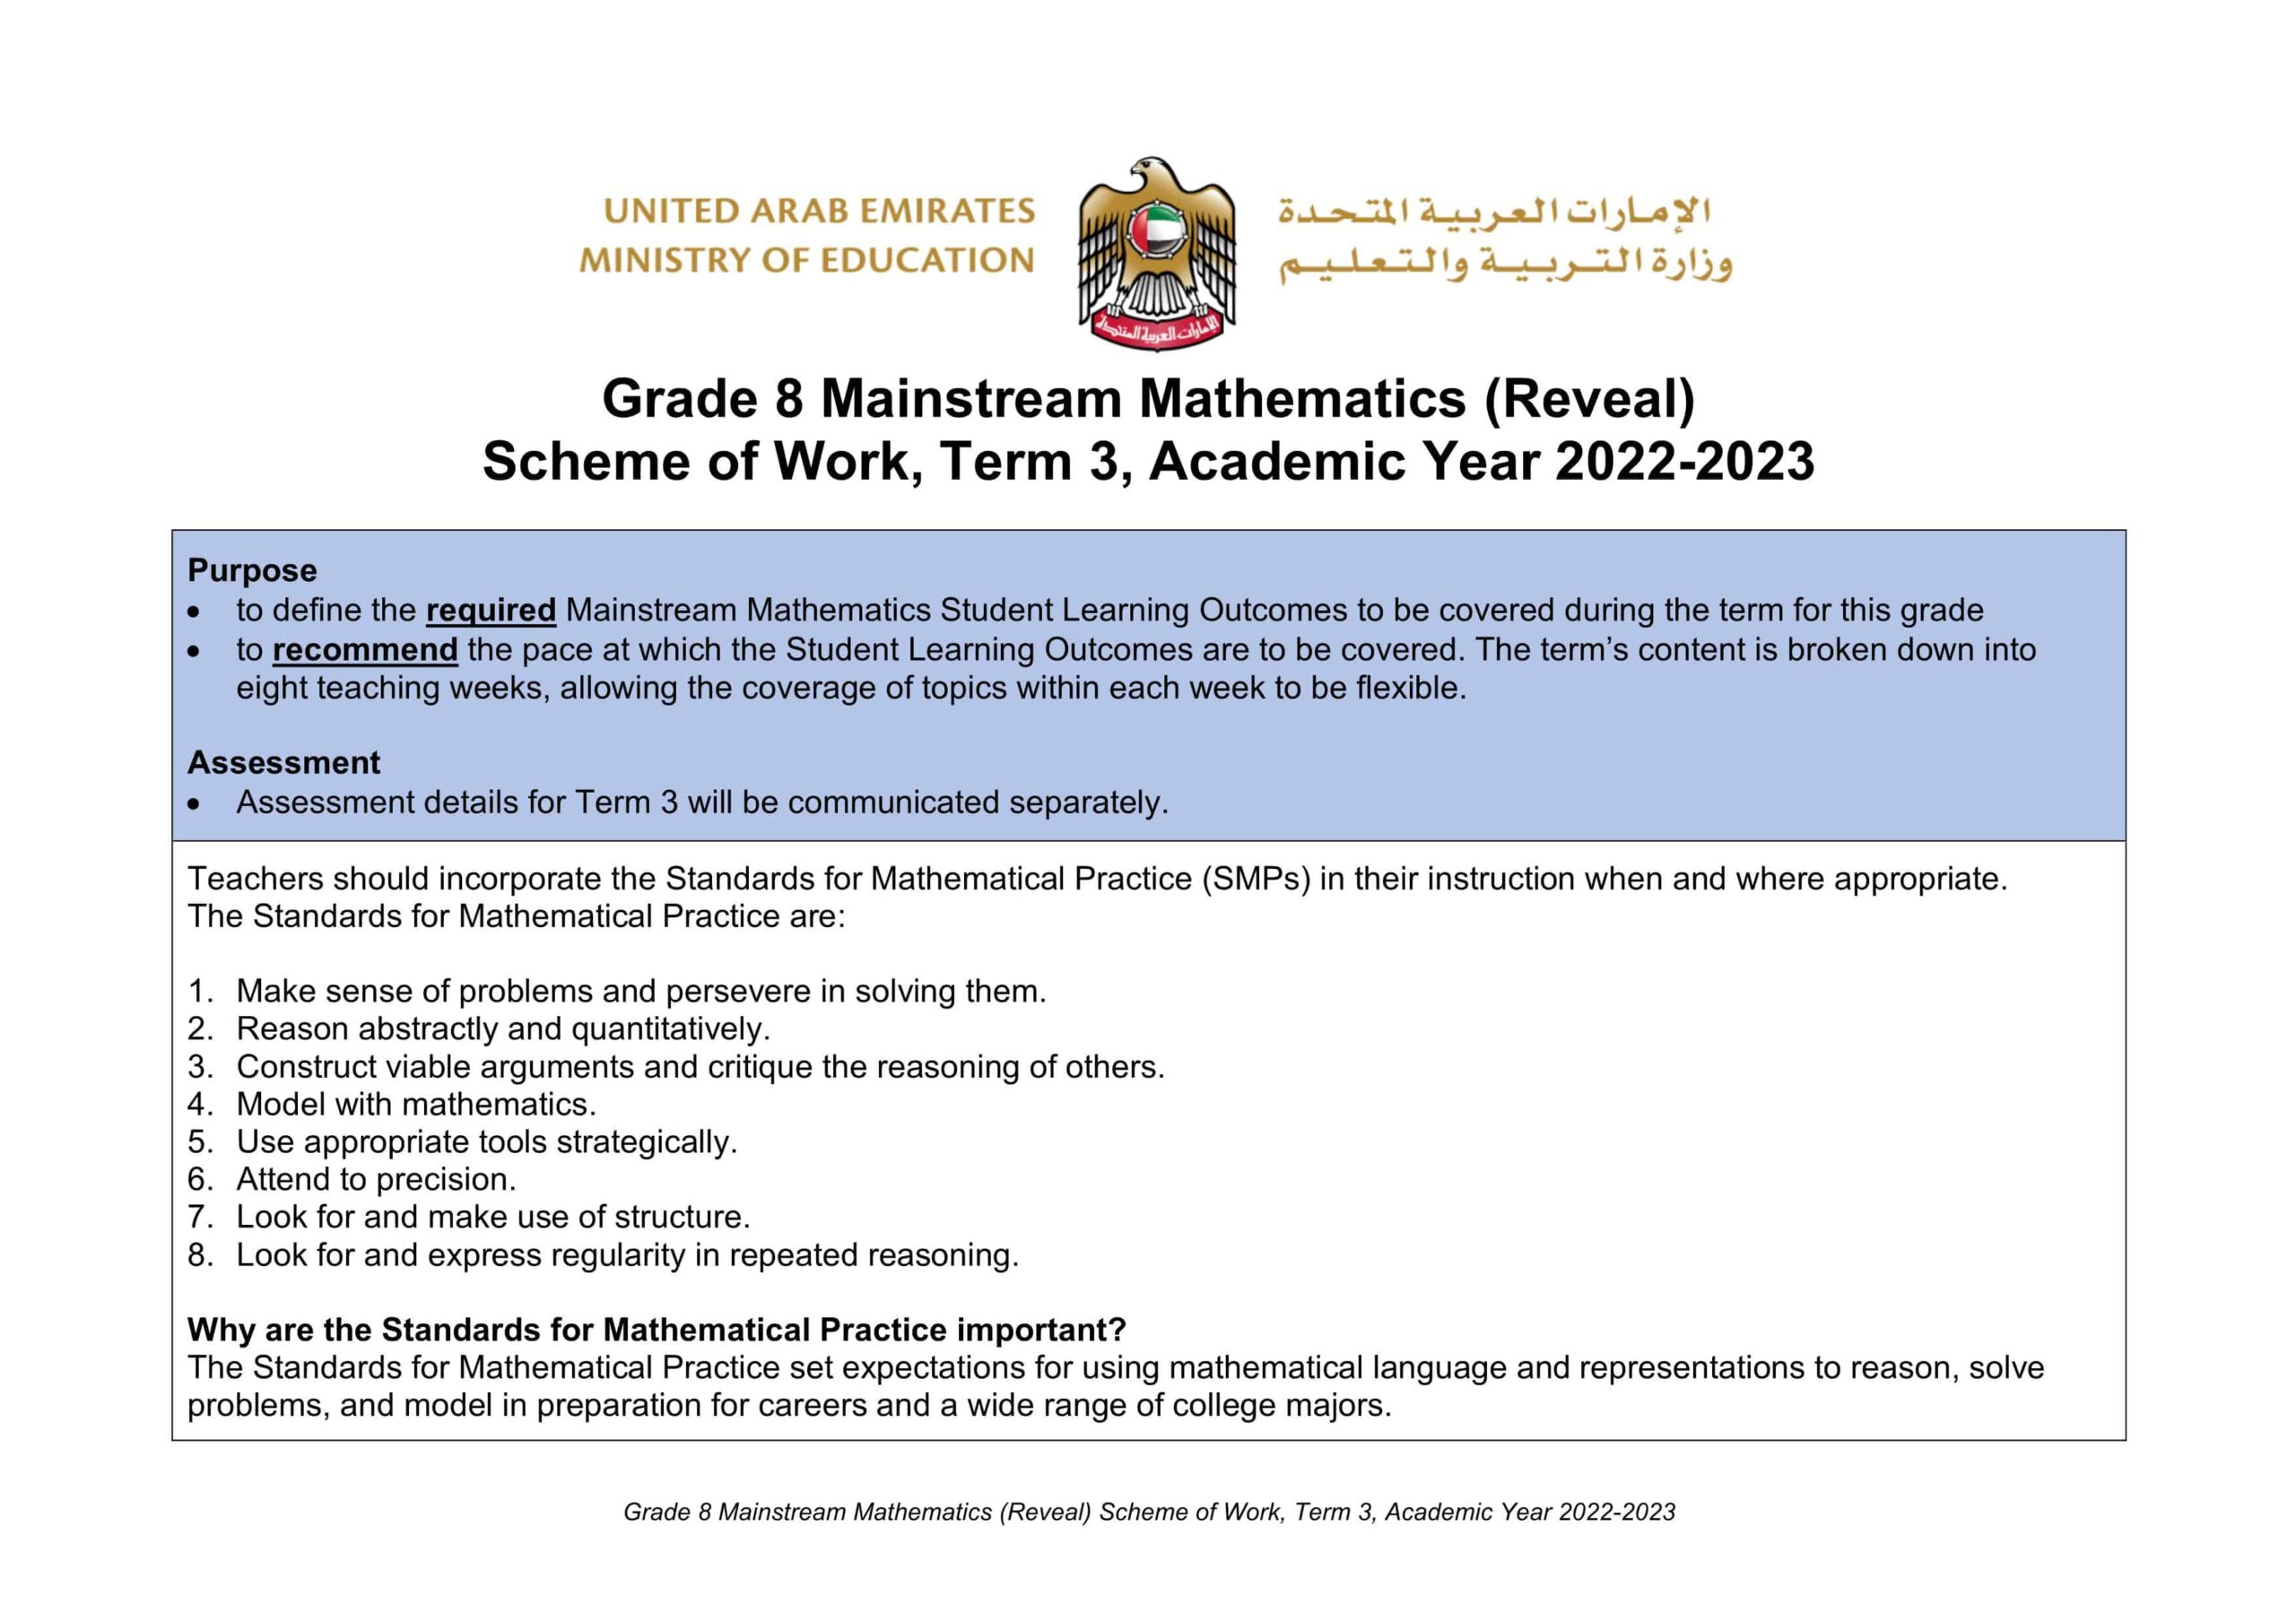 الخطة الفصلية الرياضيات المتكاملة الصف الثامن Reveal الفصل الدراسي الثالث 2022-2023